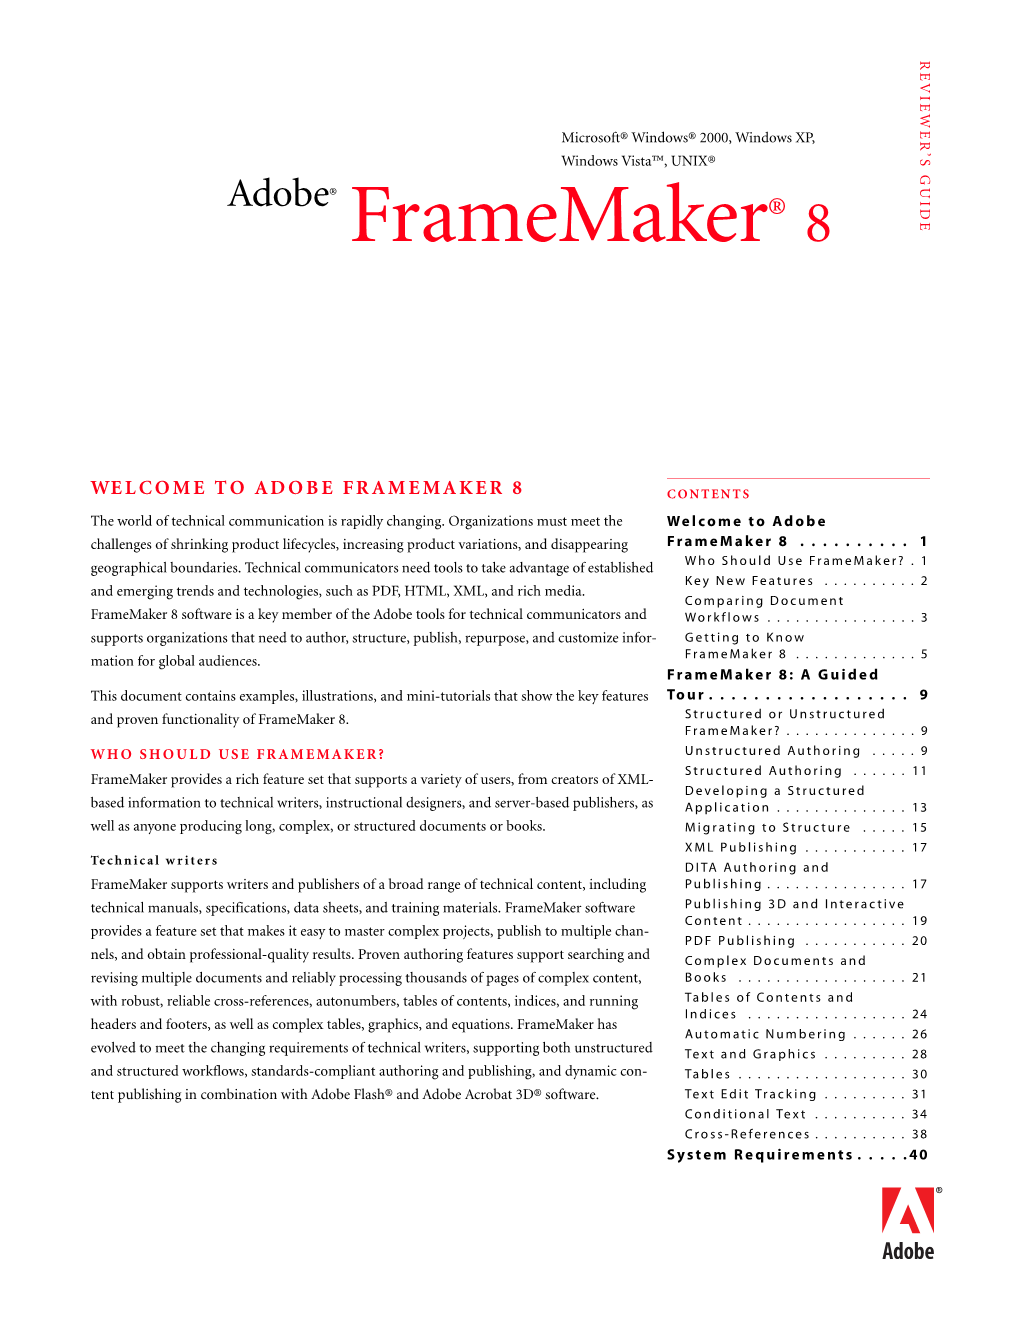 Framemaker 8 Reviewer's Guide